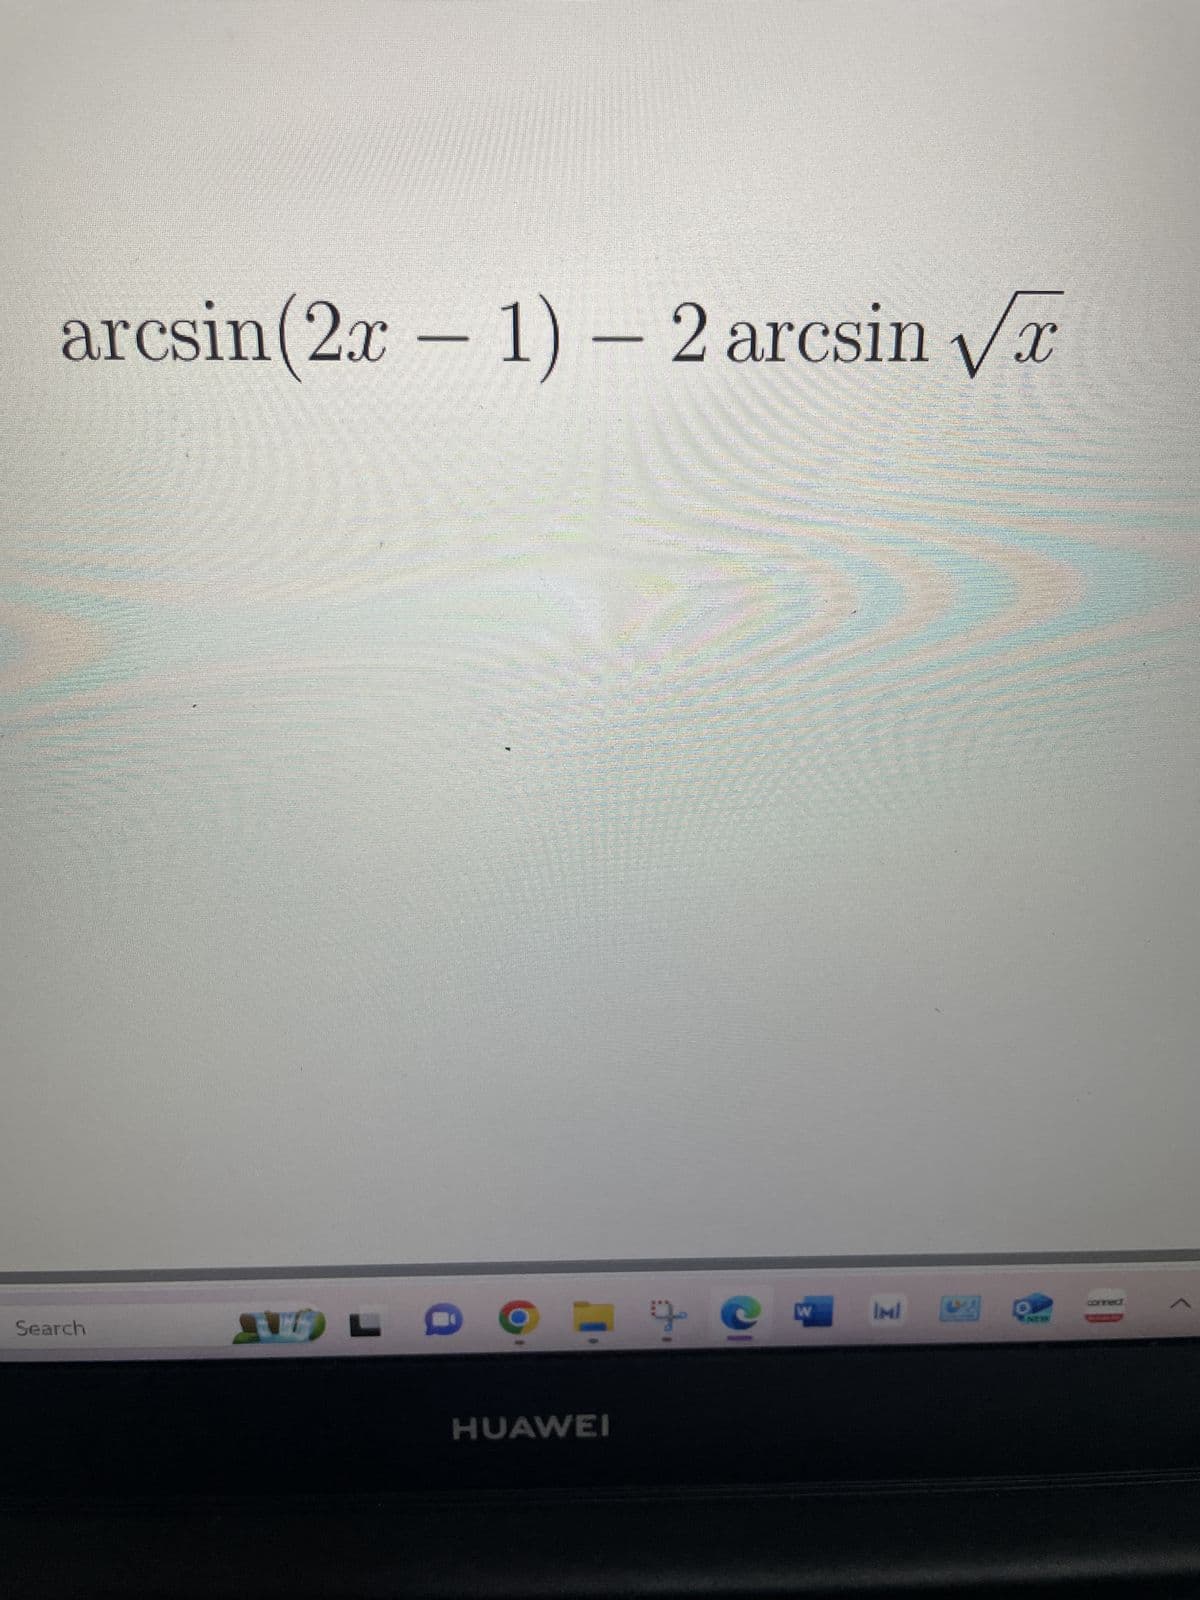 X
arcsin (2x - 1) - 2 arcsin √x
Search
SL
- C
HUAWEI
Resens
W
det jeg
*******
IMI DZ
www
(